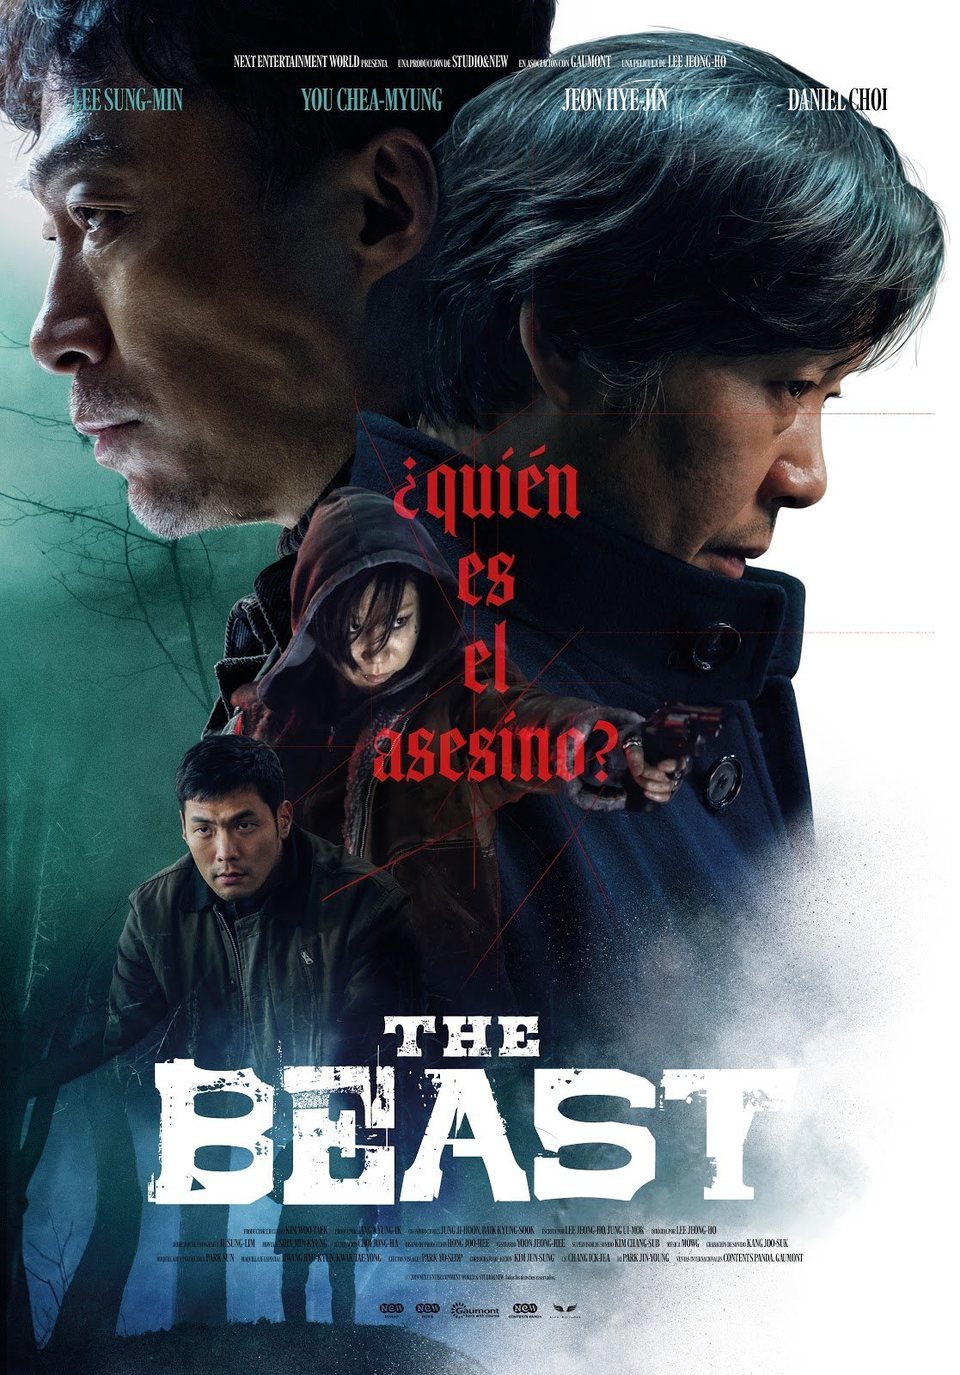 Cartel de The Beast - España